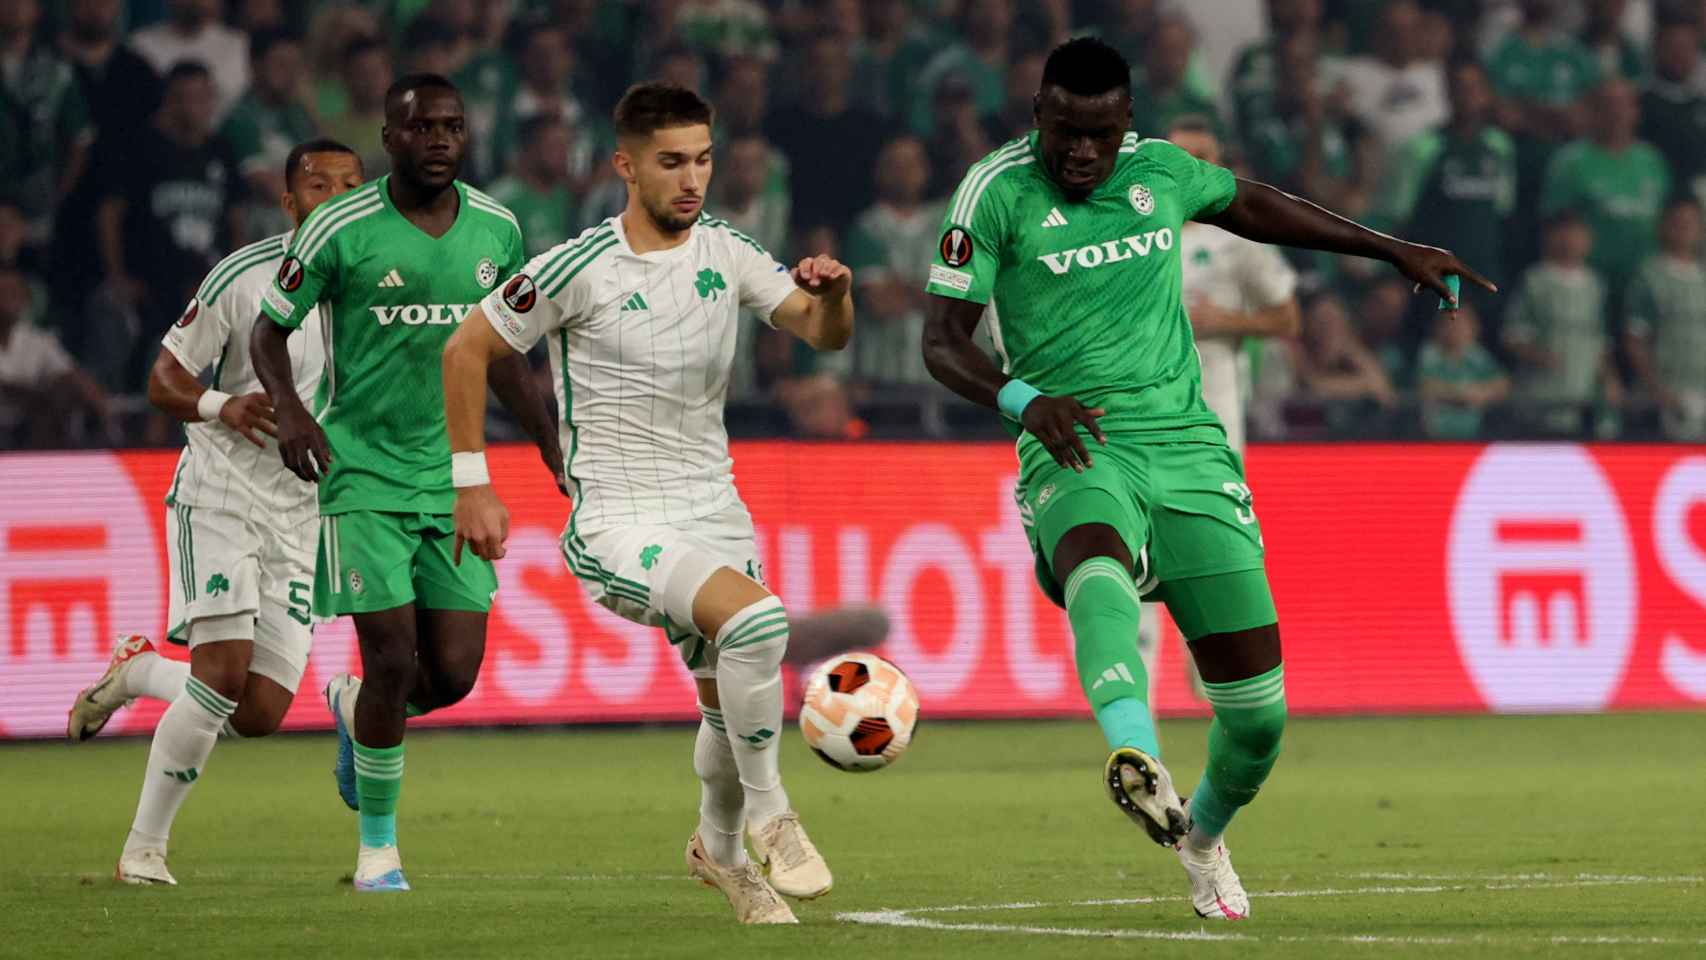 Los futbolistas del Maccabi Haifa, de verde, durante un partido de la UEFA Europa League.